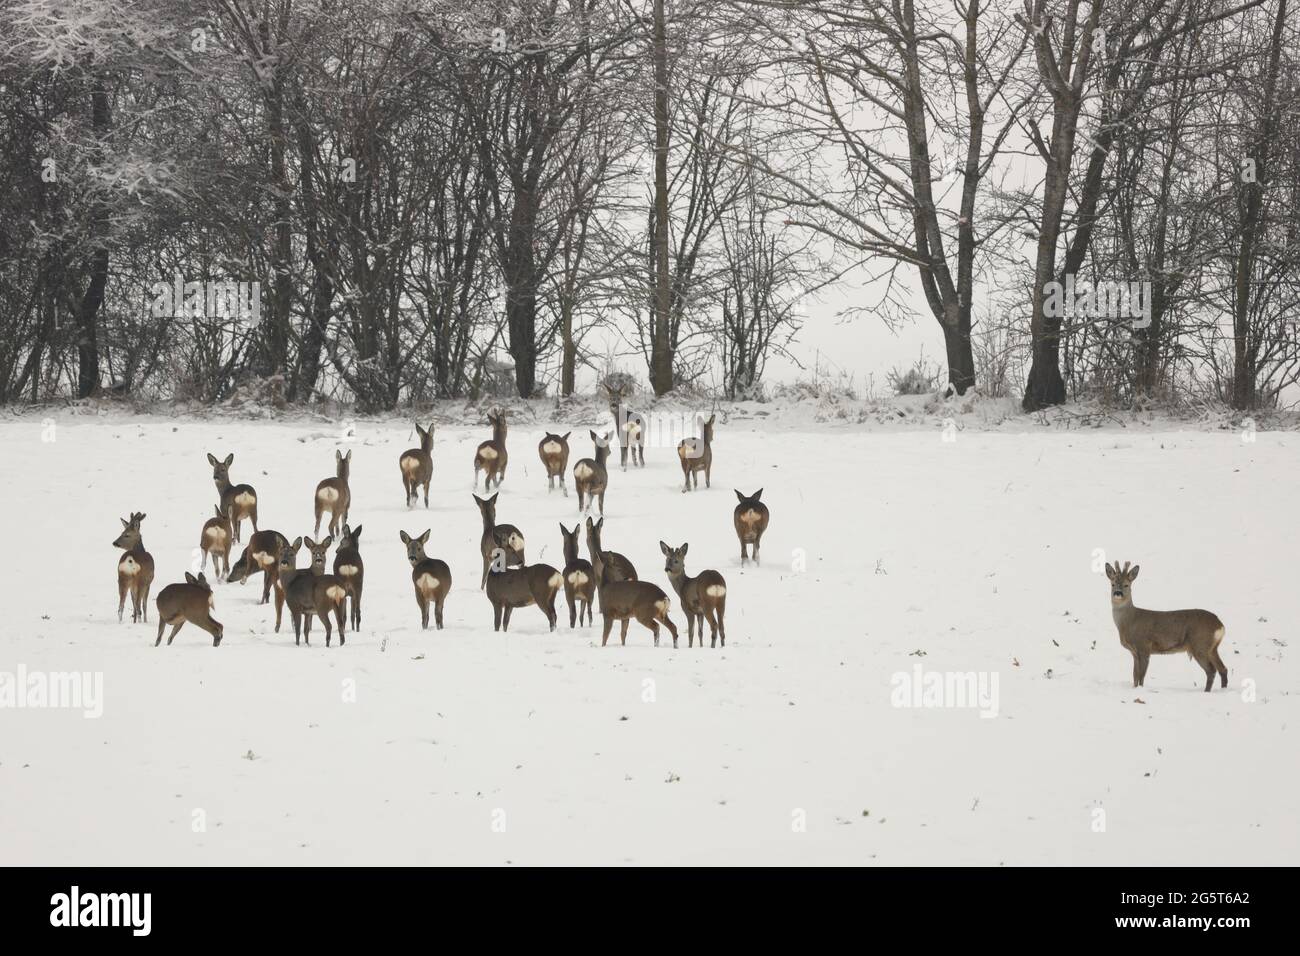 roe deer (Capreolus capreolus), Large group of roe deers in a snowy field, Germany, Baden-Wuerttemberg Stock Photo